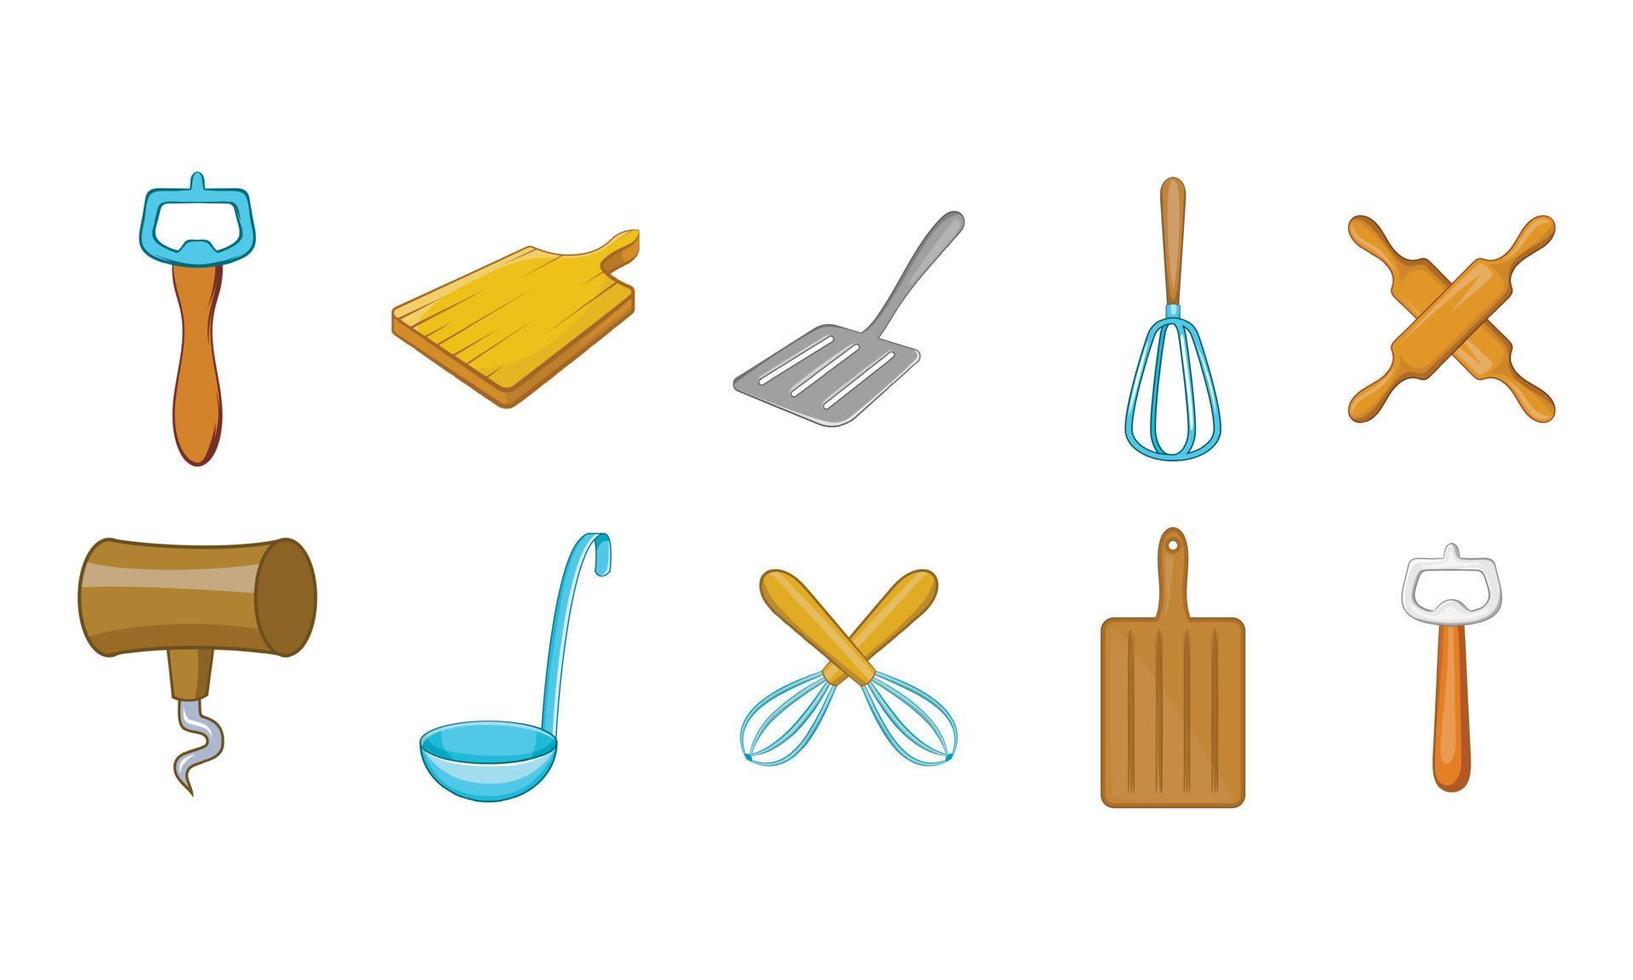 Kitchen tools icon set, cartoon style vector